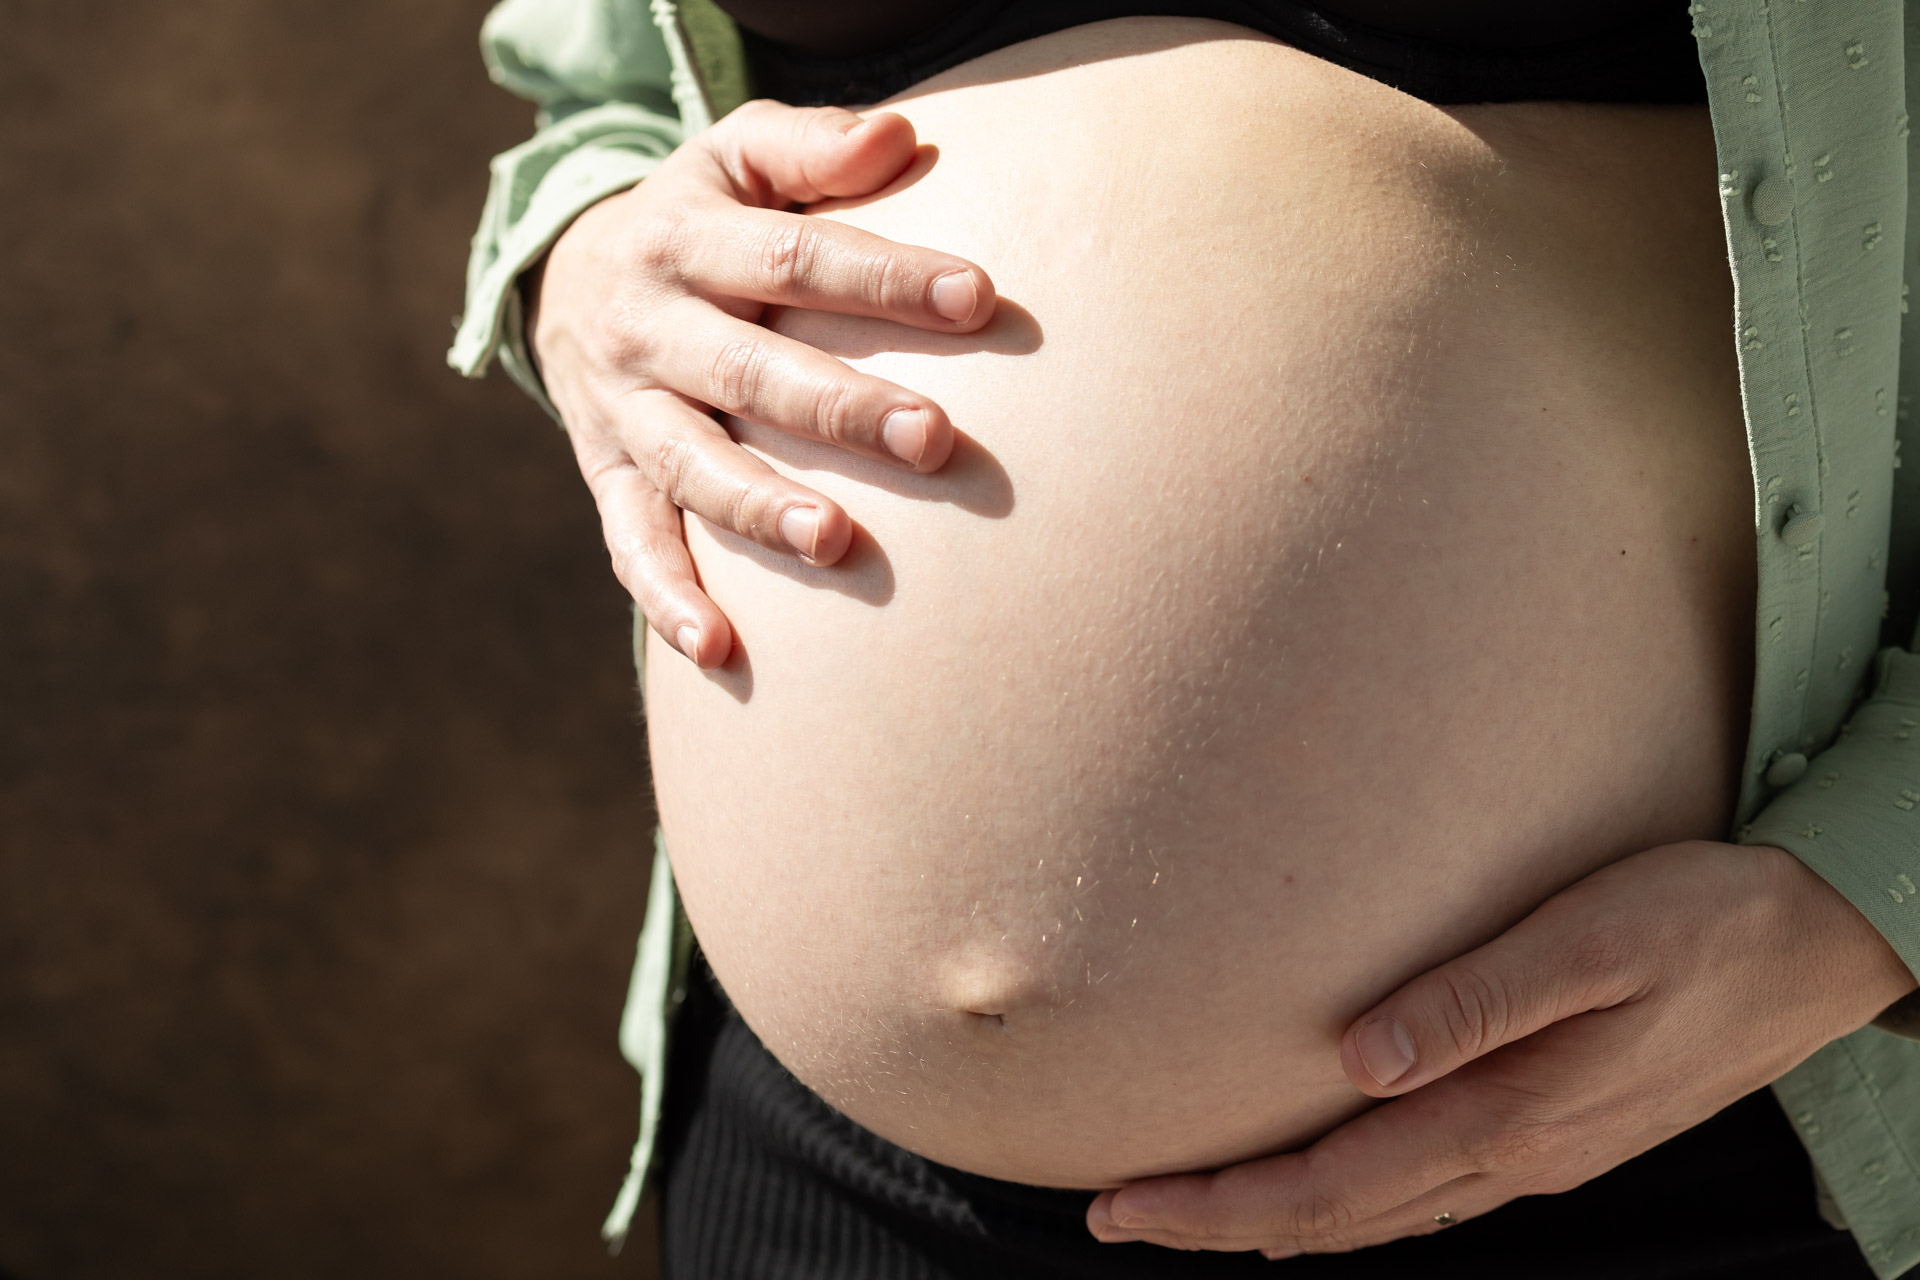 zwangerschapsshoot project 2024 Marinke fotografie zwanger dikke buik lifestyle zwangerschap portret